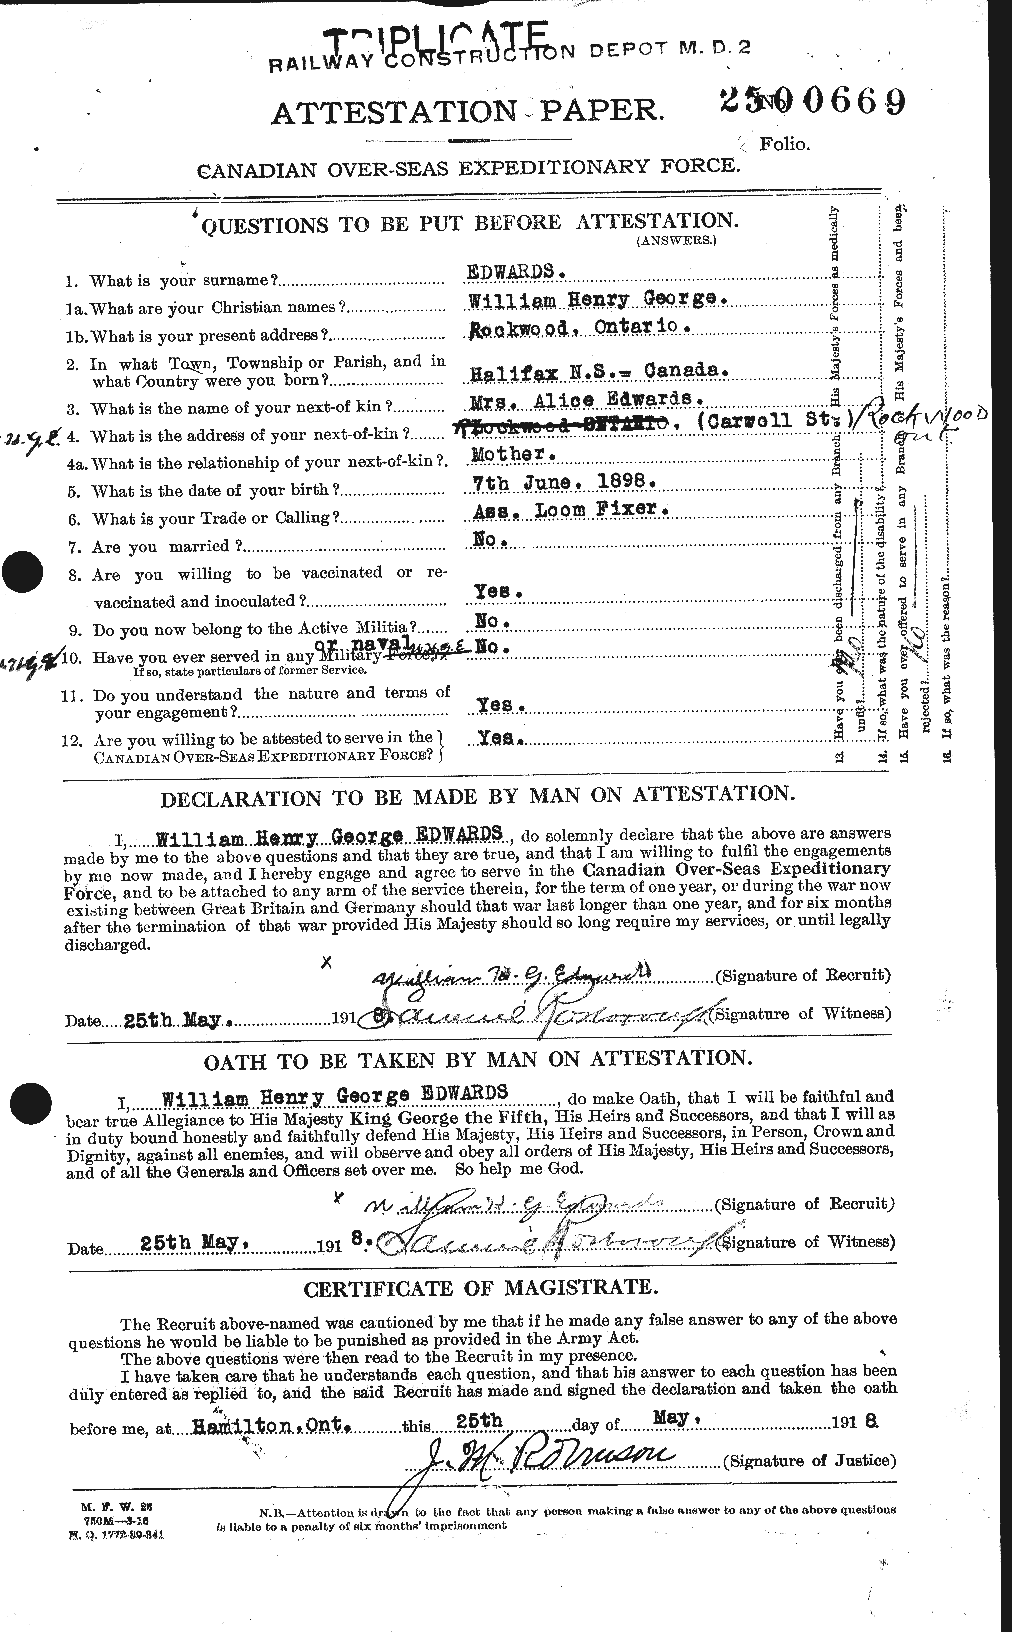 Dossiers du Personnel de la Première Guerre mondiale - CEC 310386a